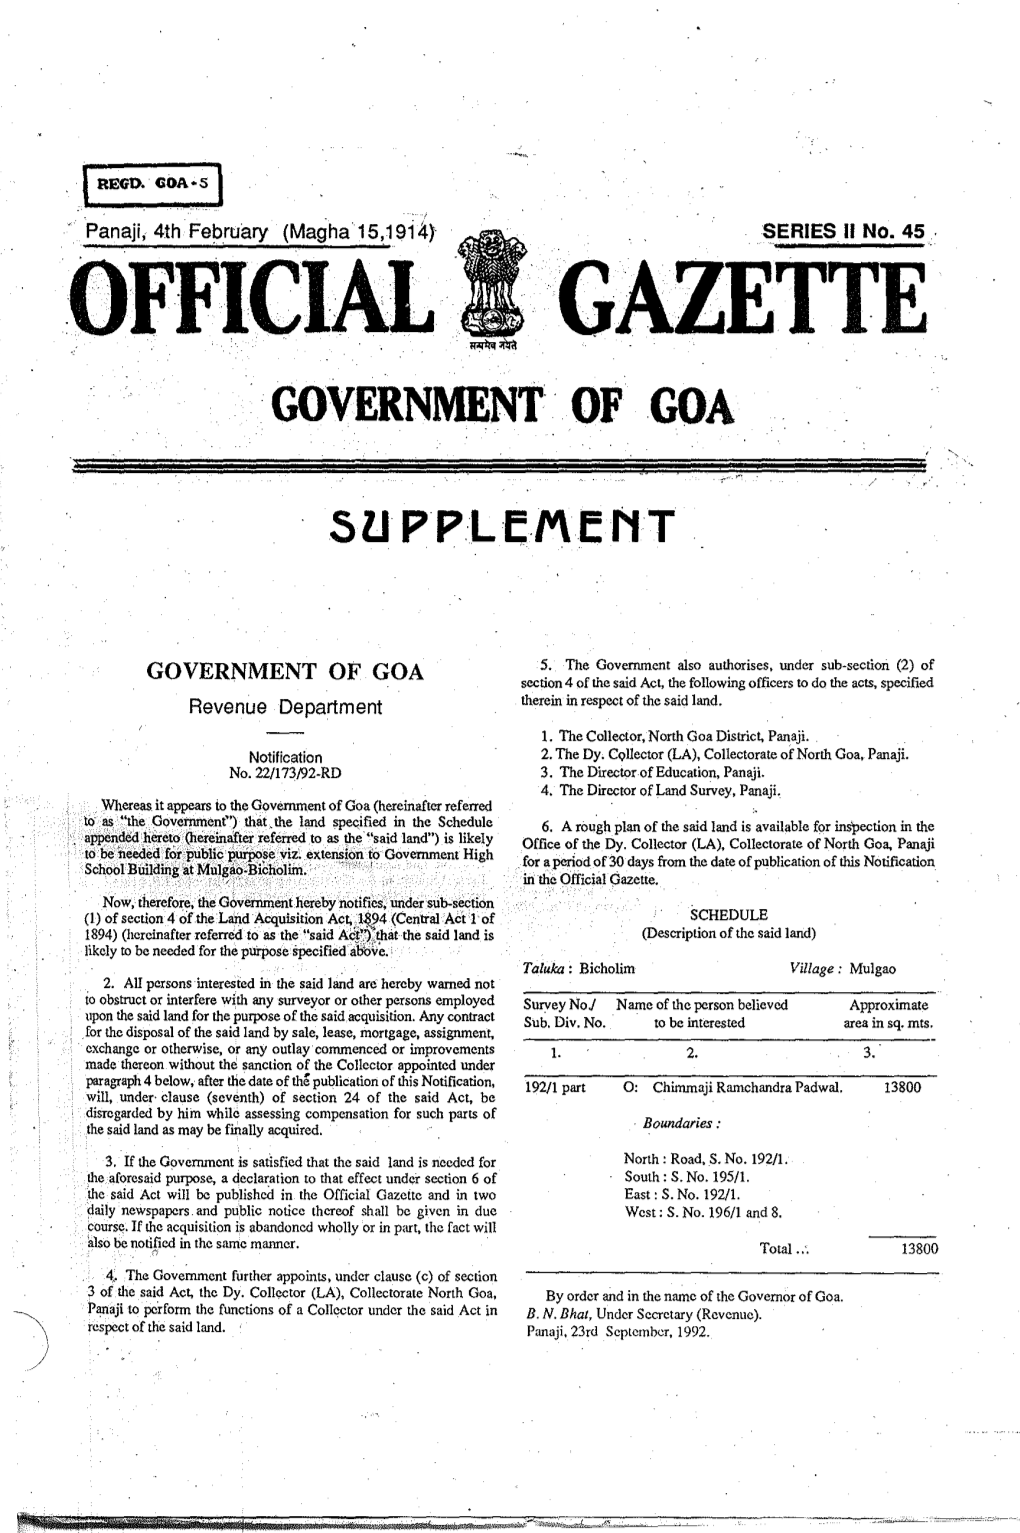 Official Gazette Government' of Goa